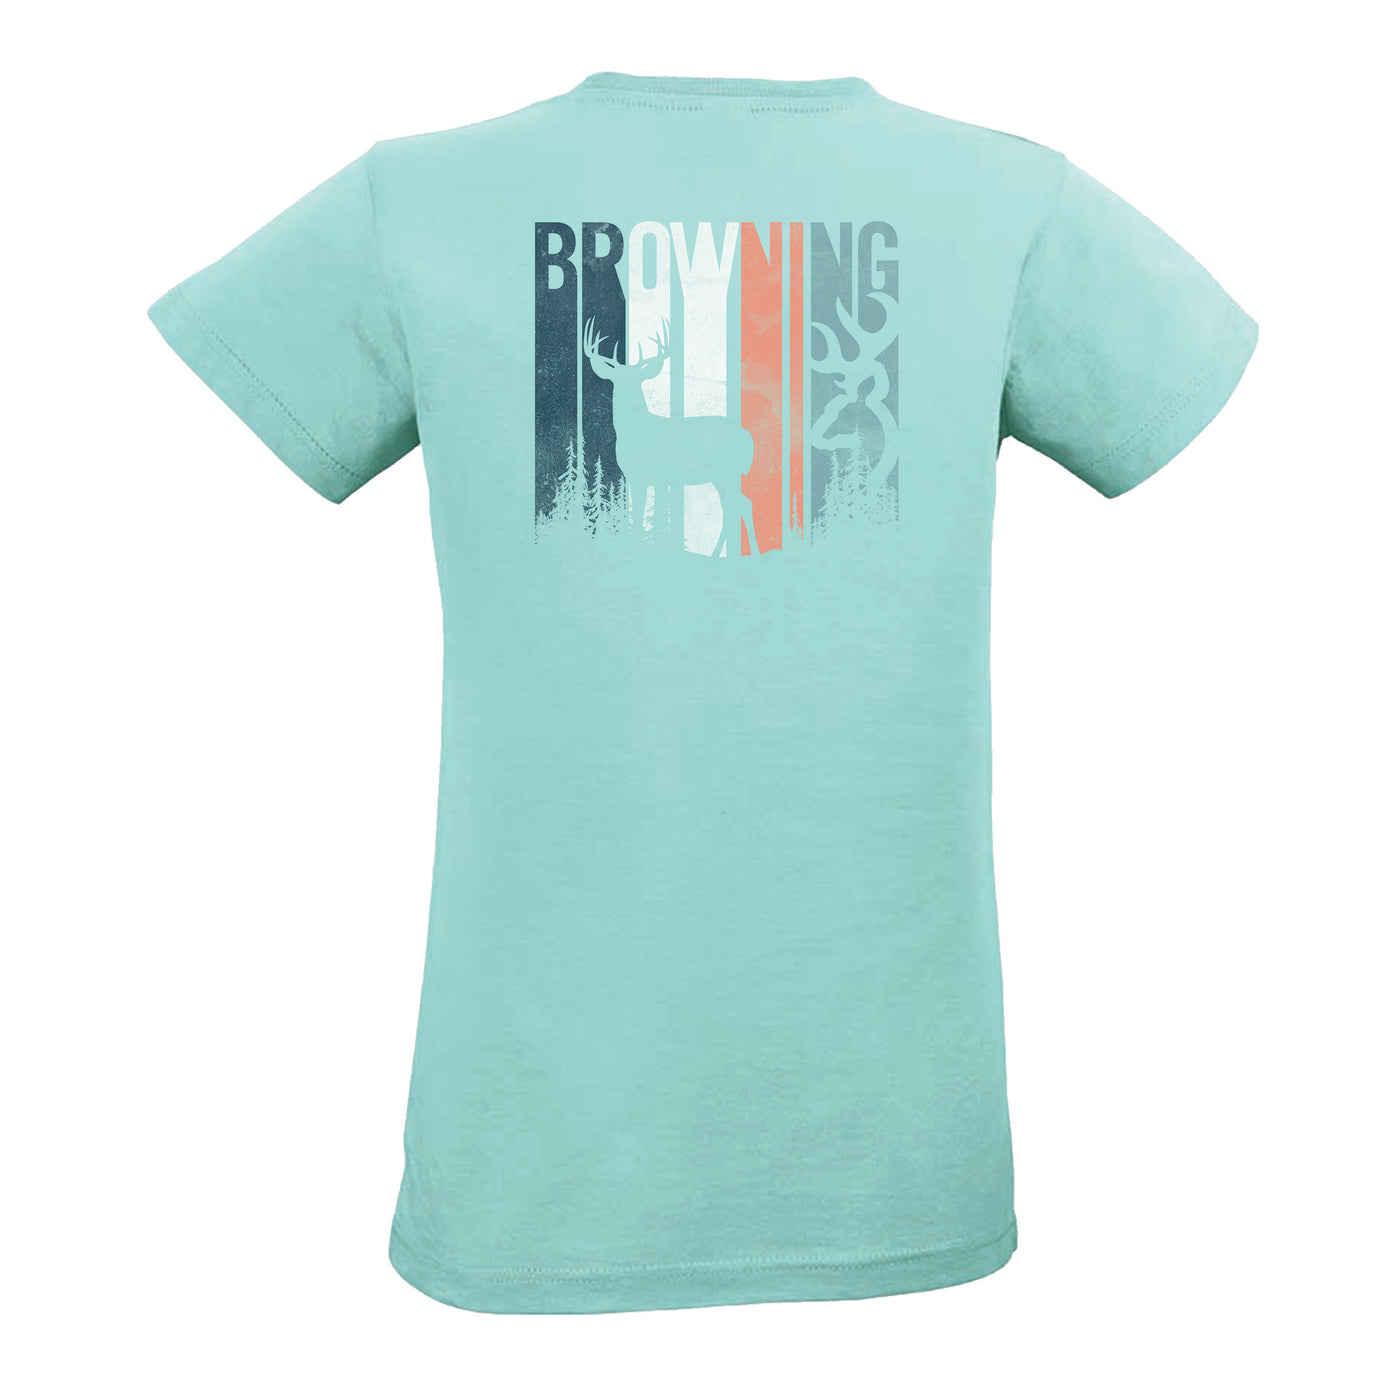 Browning Women's Short Sleeve Shirt